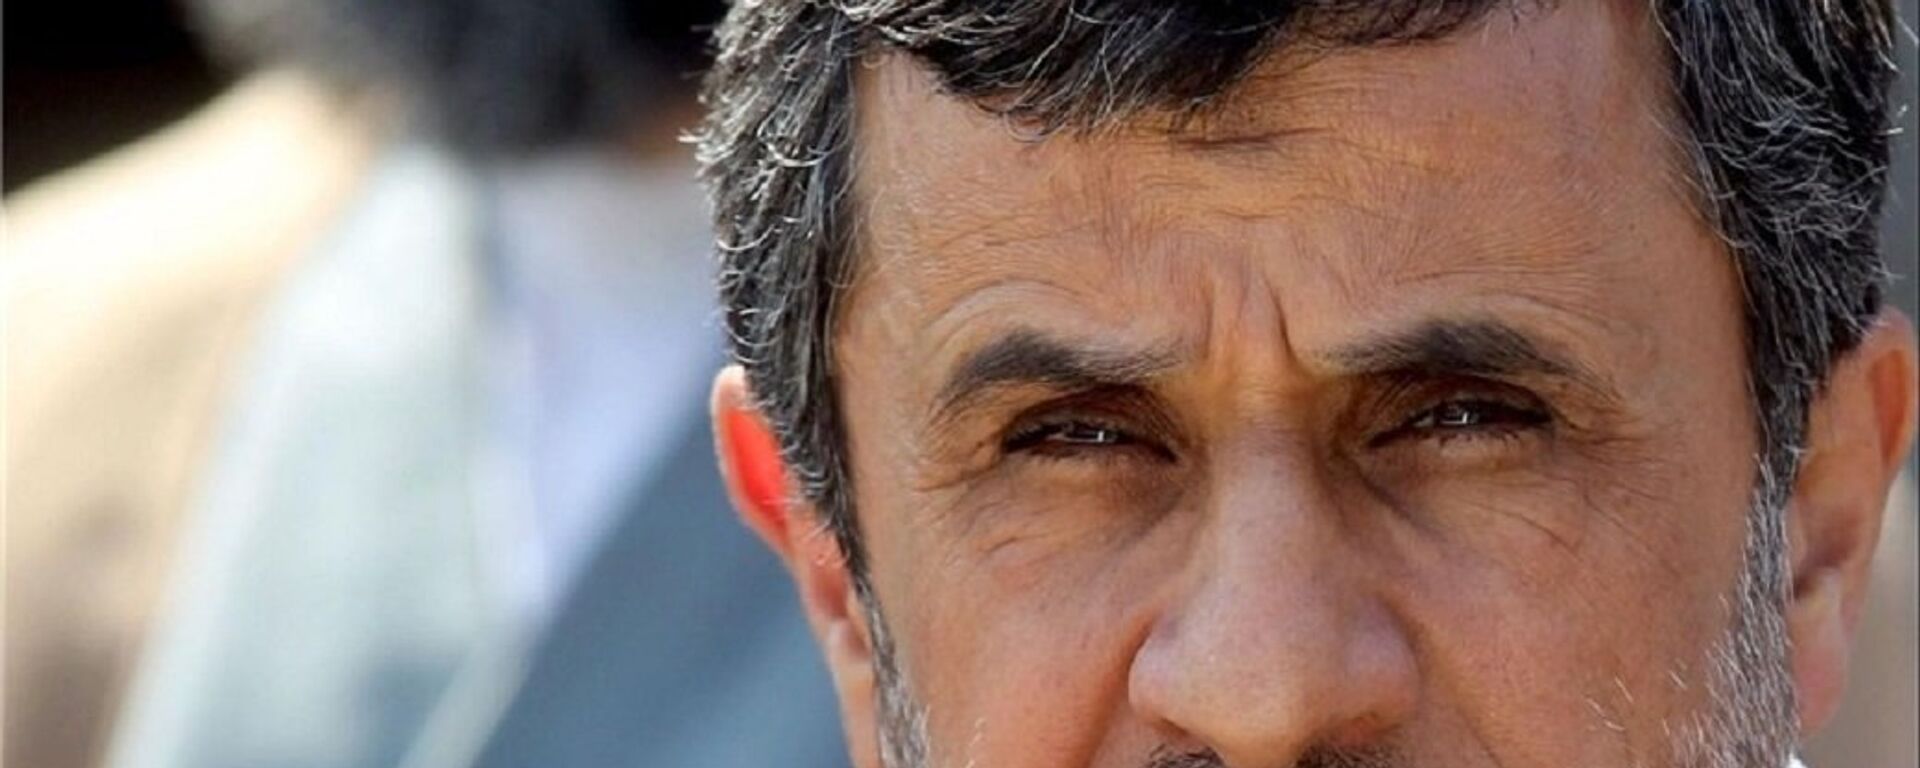 احتمال نامزدی احمدی نژاد برای انتخابات ریاست جمهوری 1400 چقدر است؟ - اسپوتنیک ایران  , 1920, 16.03.2021